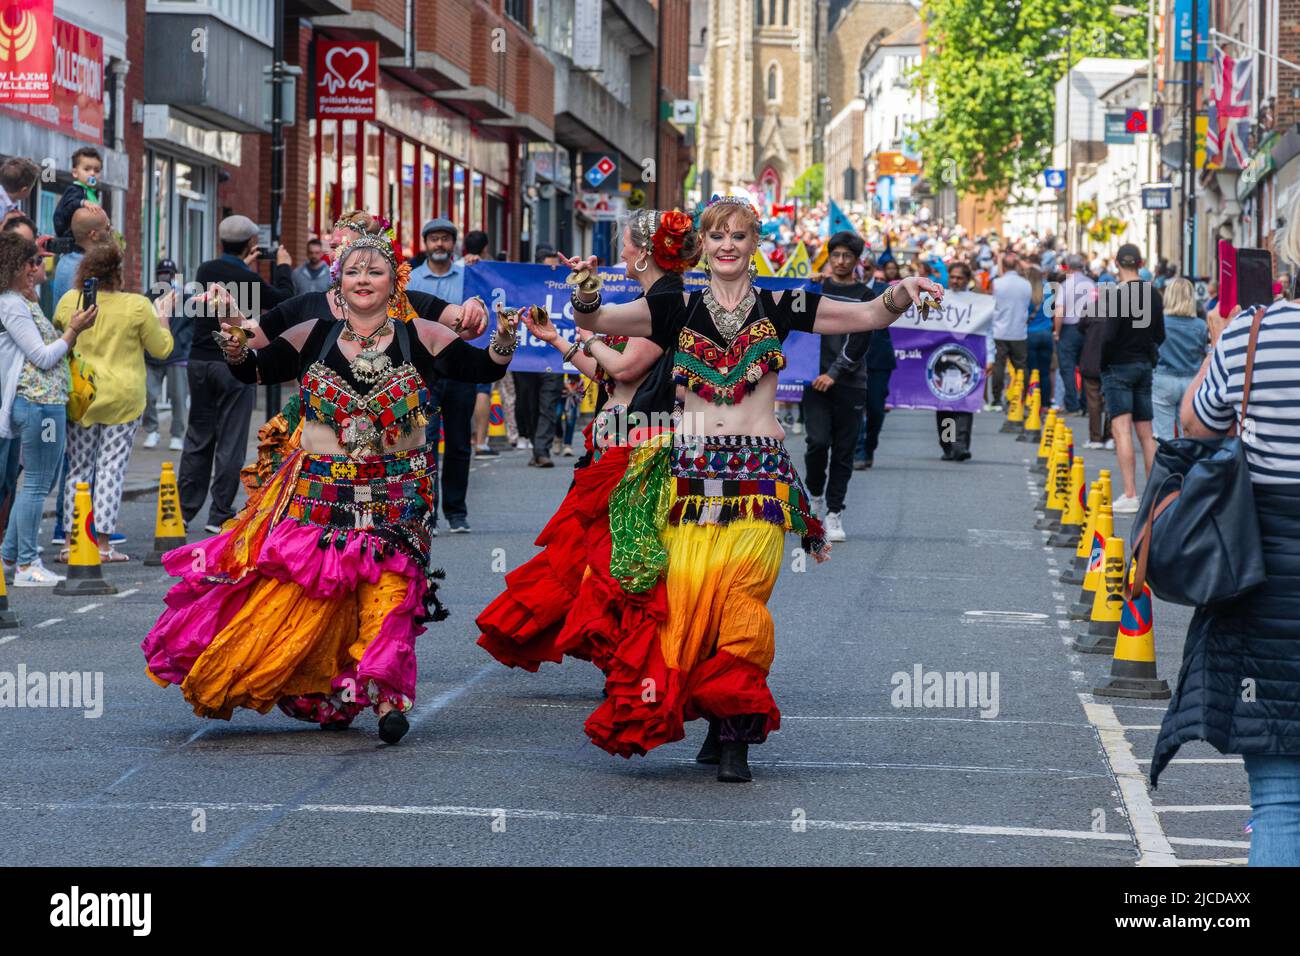 Bauchtänzer in farbenfrohen Kostümen nehmen an der Grand Parade am Victoria Day Teil, einer jährlichen Veranstaltung in Aldershot, Hampshire, England, Großbritannien Stockfoto